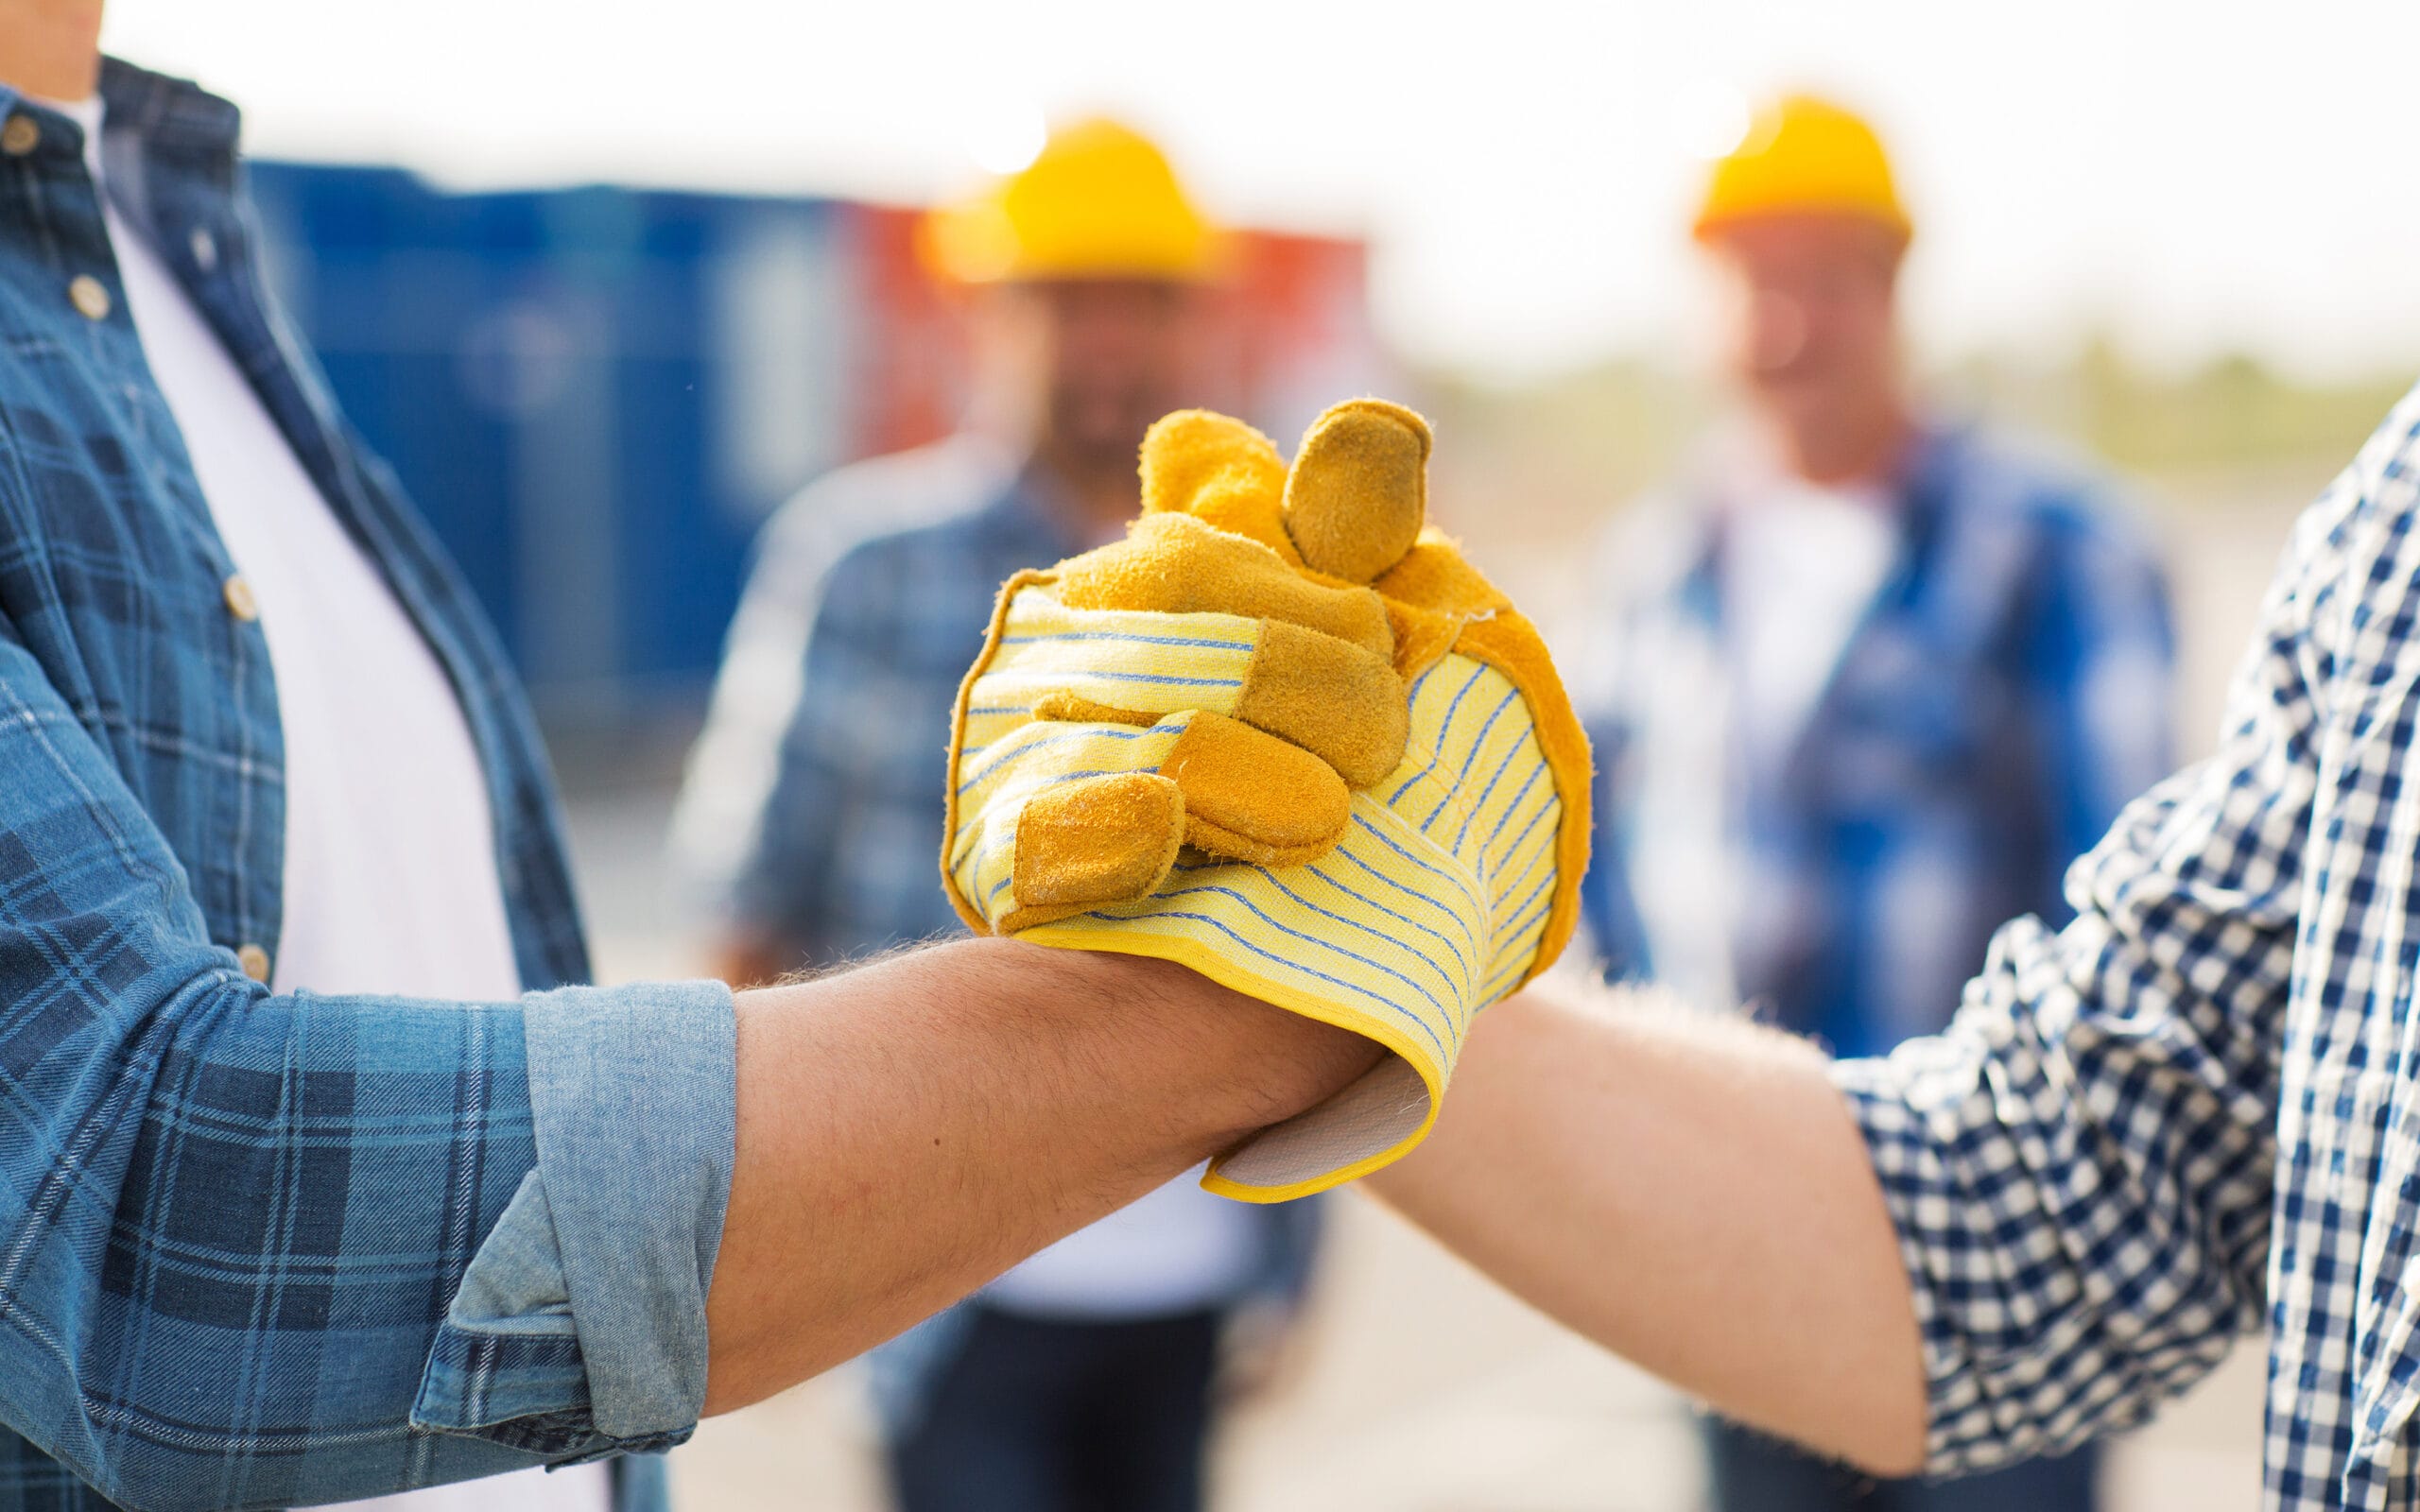 Partnership handshake between two workers wearing work gloves.